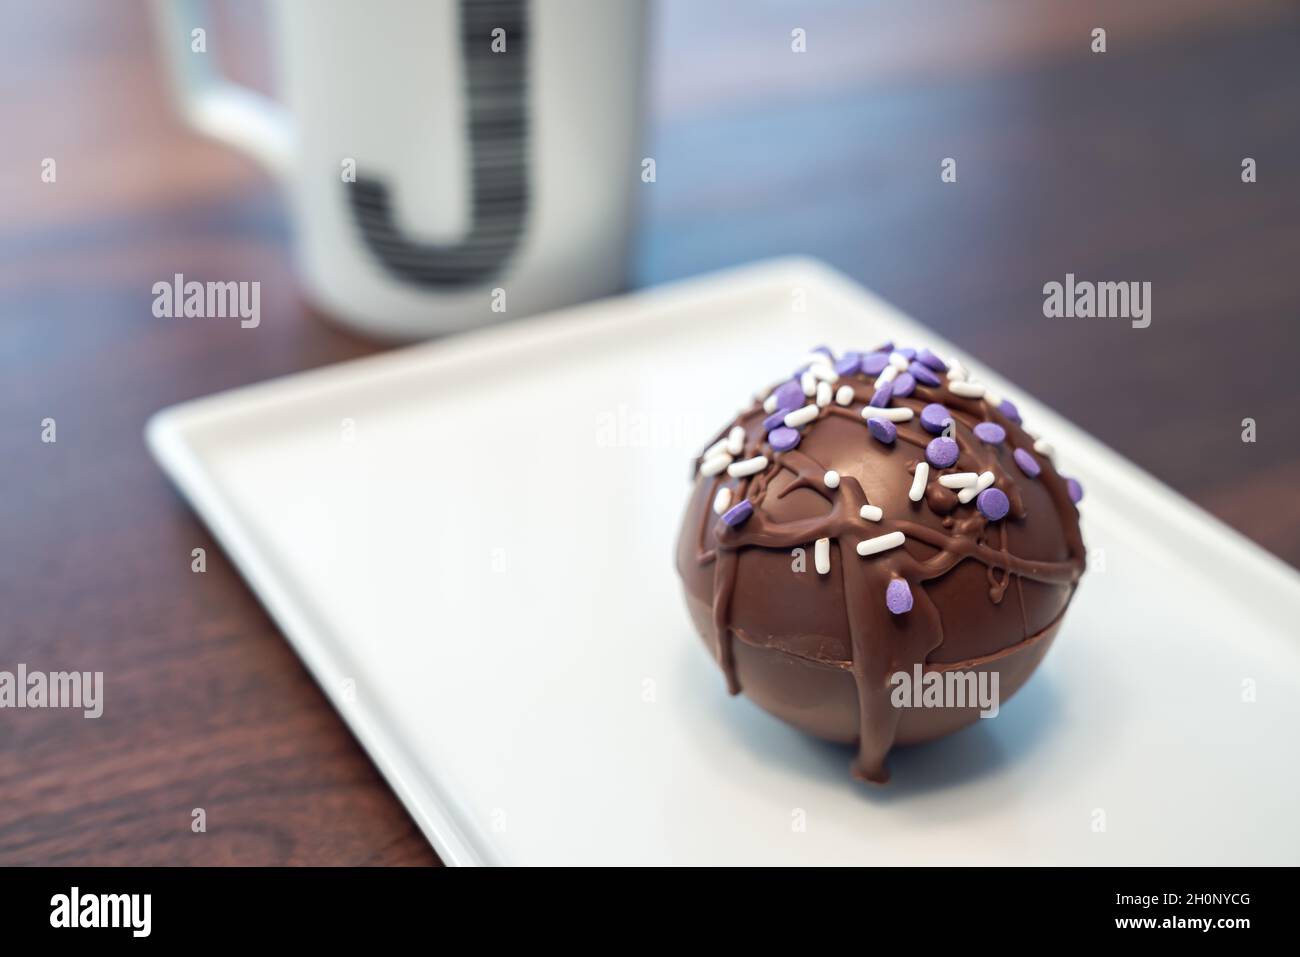 Eine heiße Kakaobombe oder Kugel, die mit beträufelter brauner Schokolade und violetten und weißen Prise bedeckt ist, auf einem weißen Servierteller mit monogramem J-Coff Stockfoto